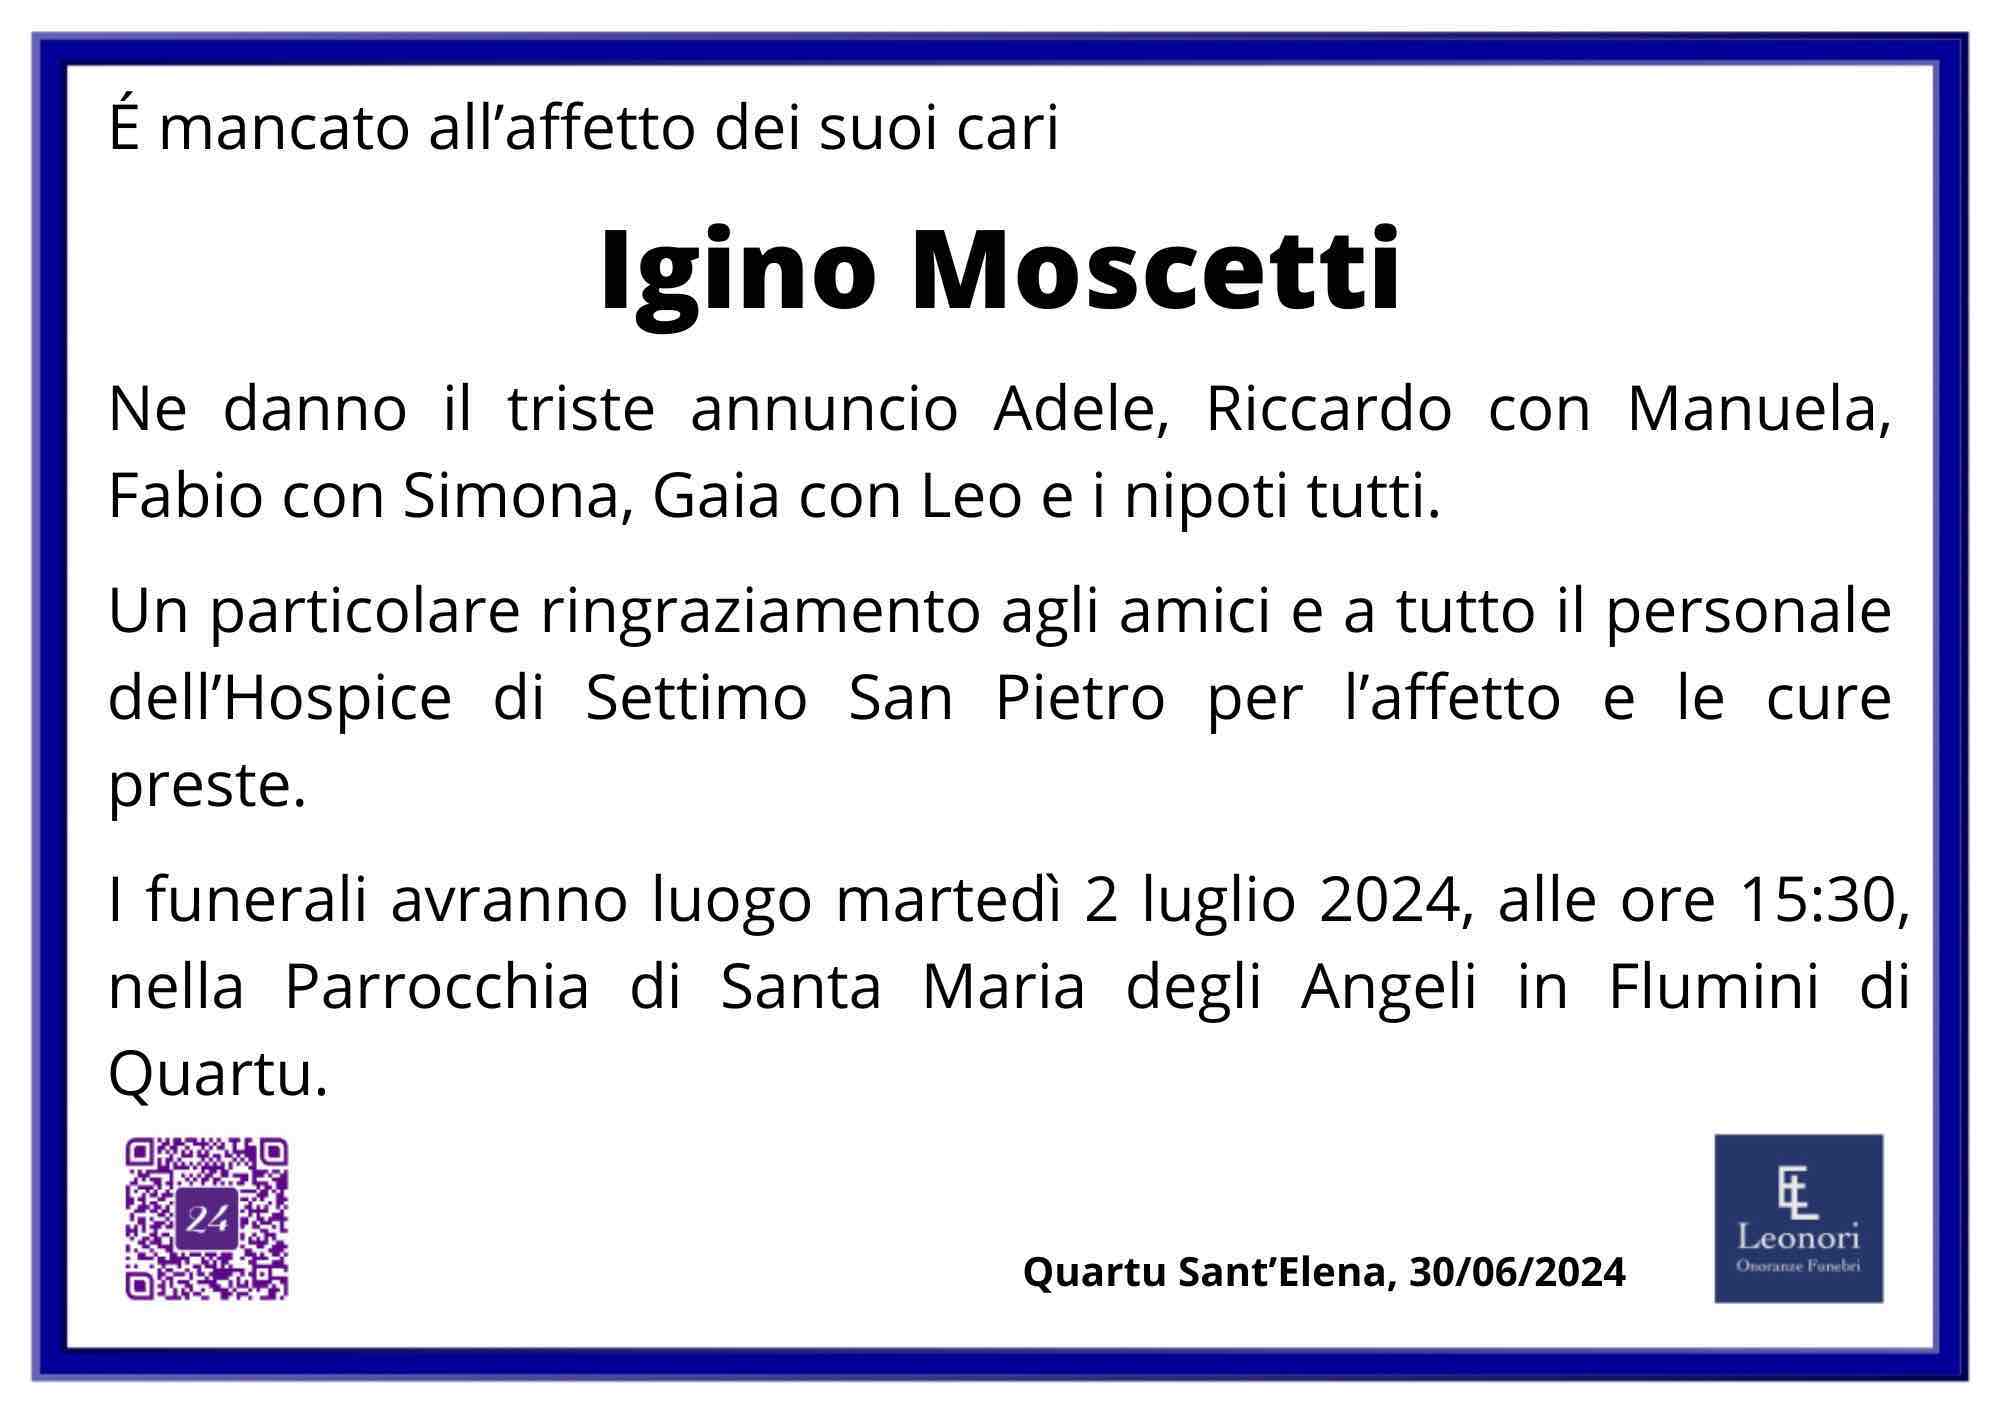 Igino Moscetti